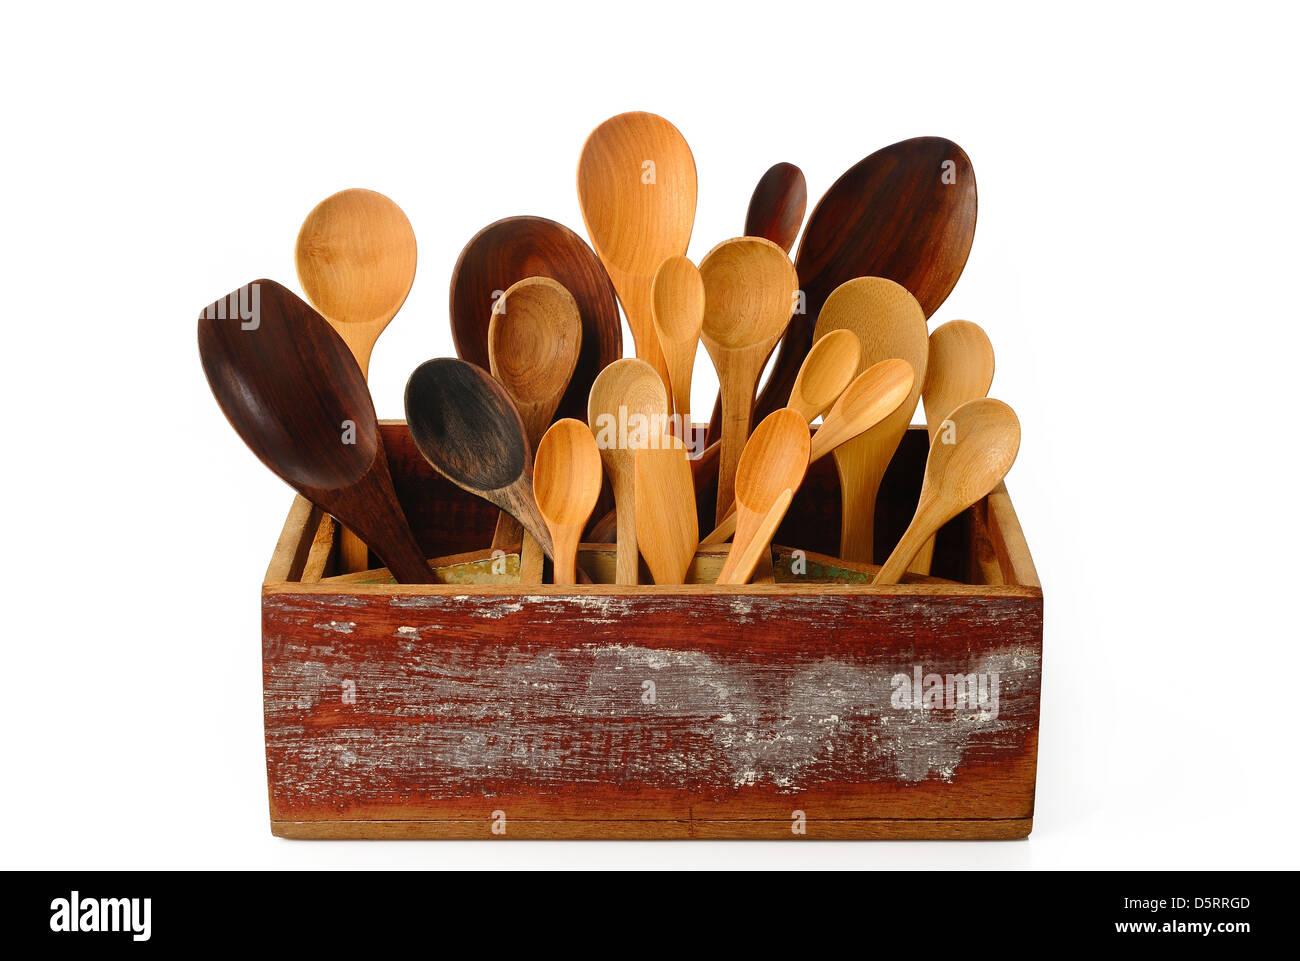 https://c8.alamy.com/compes/d5rrgd/coleccion-de-utensilios-de-cocina-de-madera-en-caja-de-madera-d5rrgd.jpg